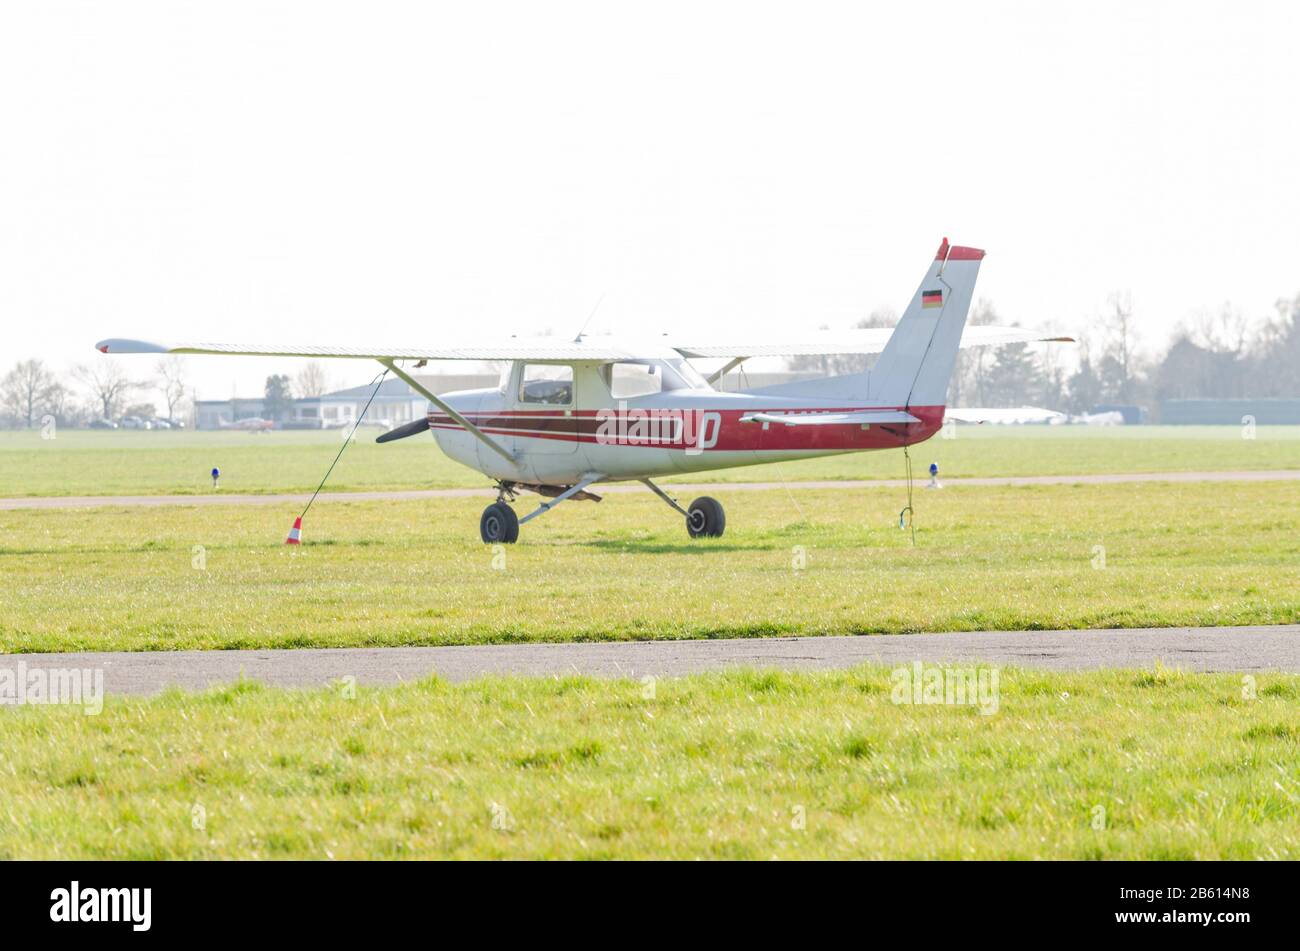 Mühlheim, Nrw, Alemania - 9 de abril de 2015: Pequeño avión deportivo durante el arranque en el aeropuerto Essen-Mülheim. Foto de stock